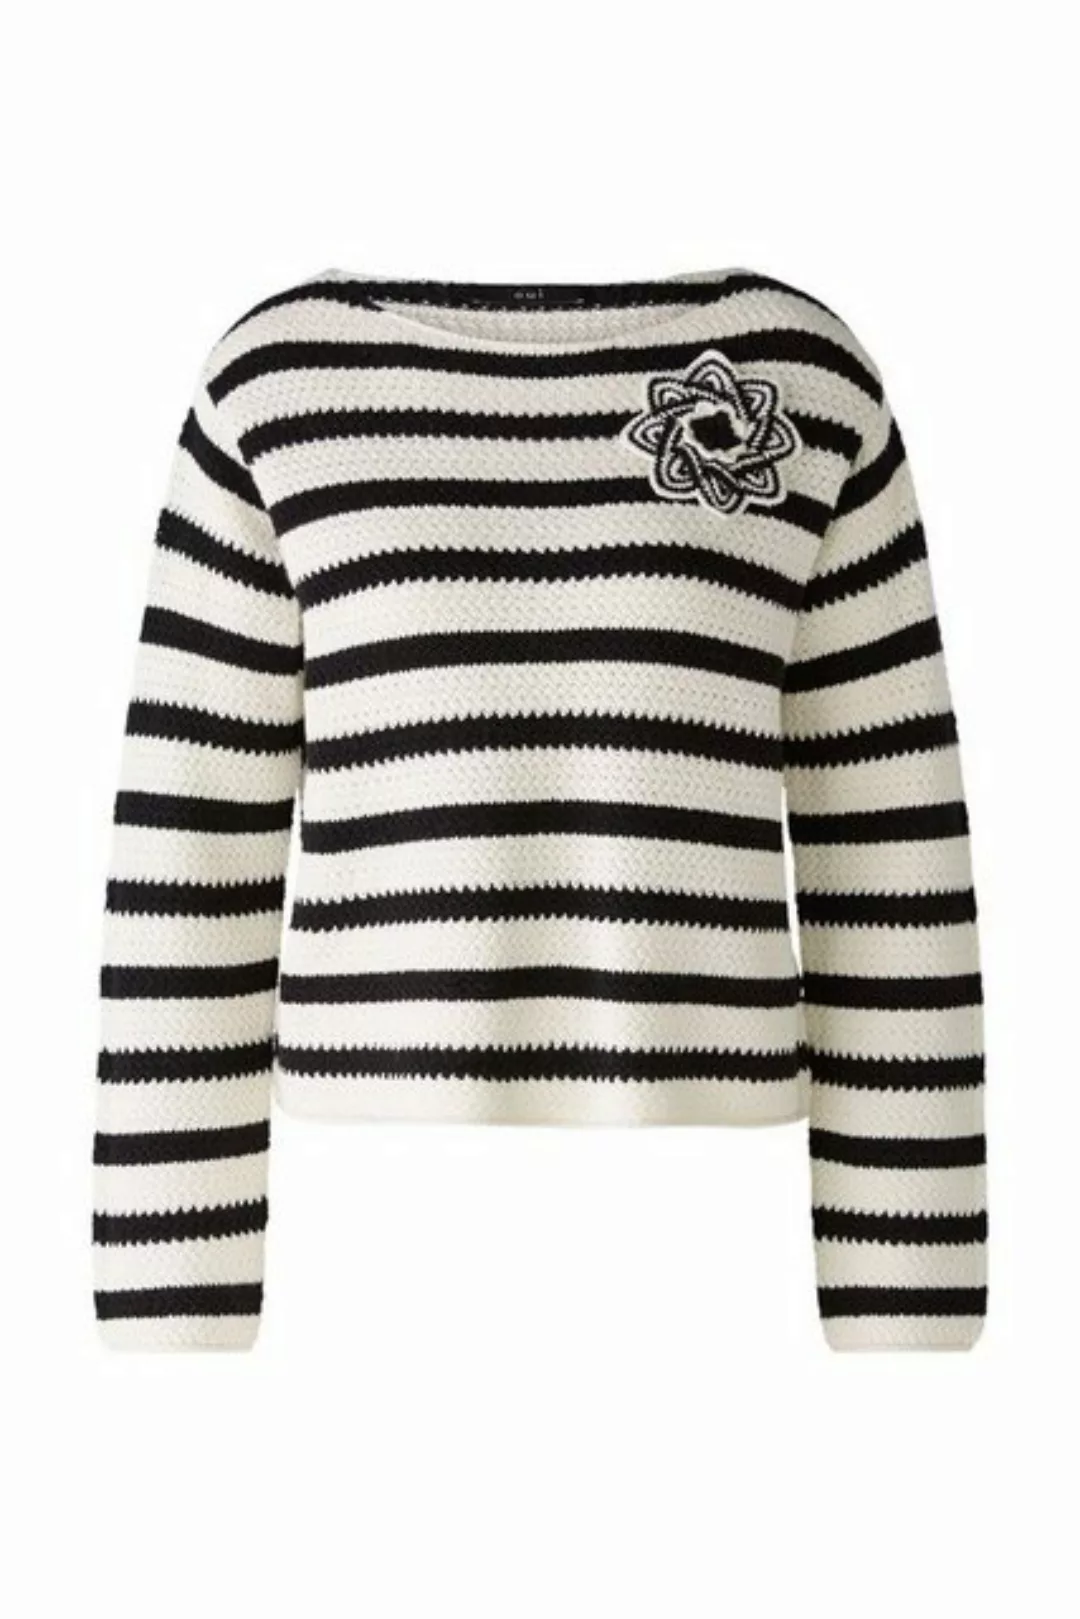 Oui Sweatshirt Pullover, offwhite black günstig online kaufen